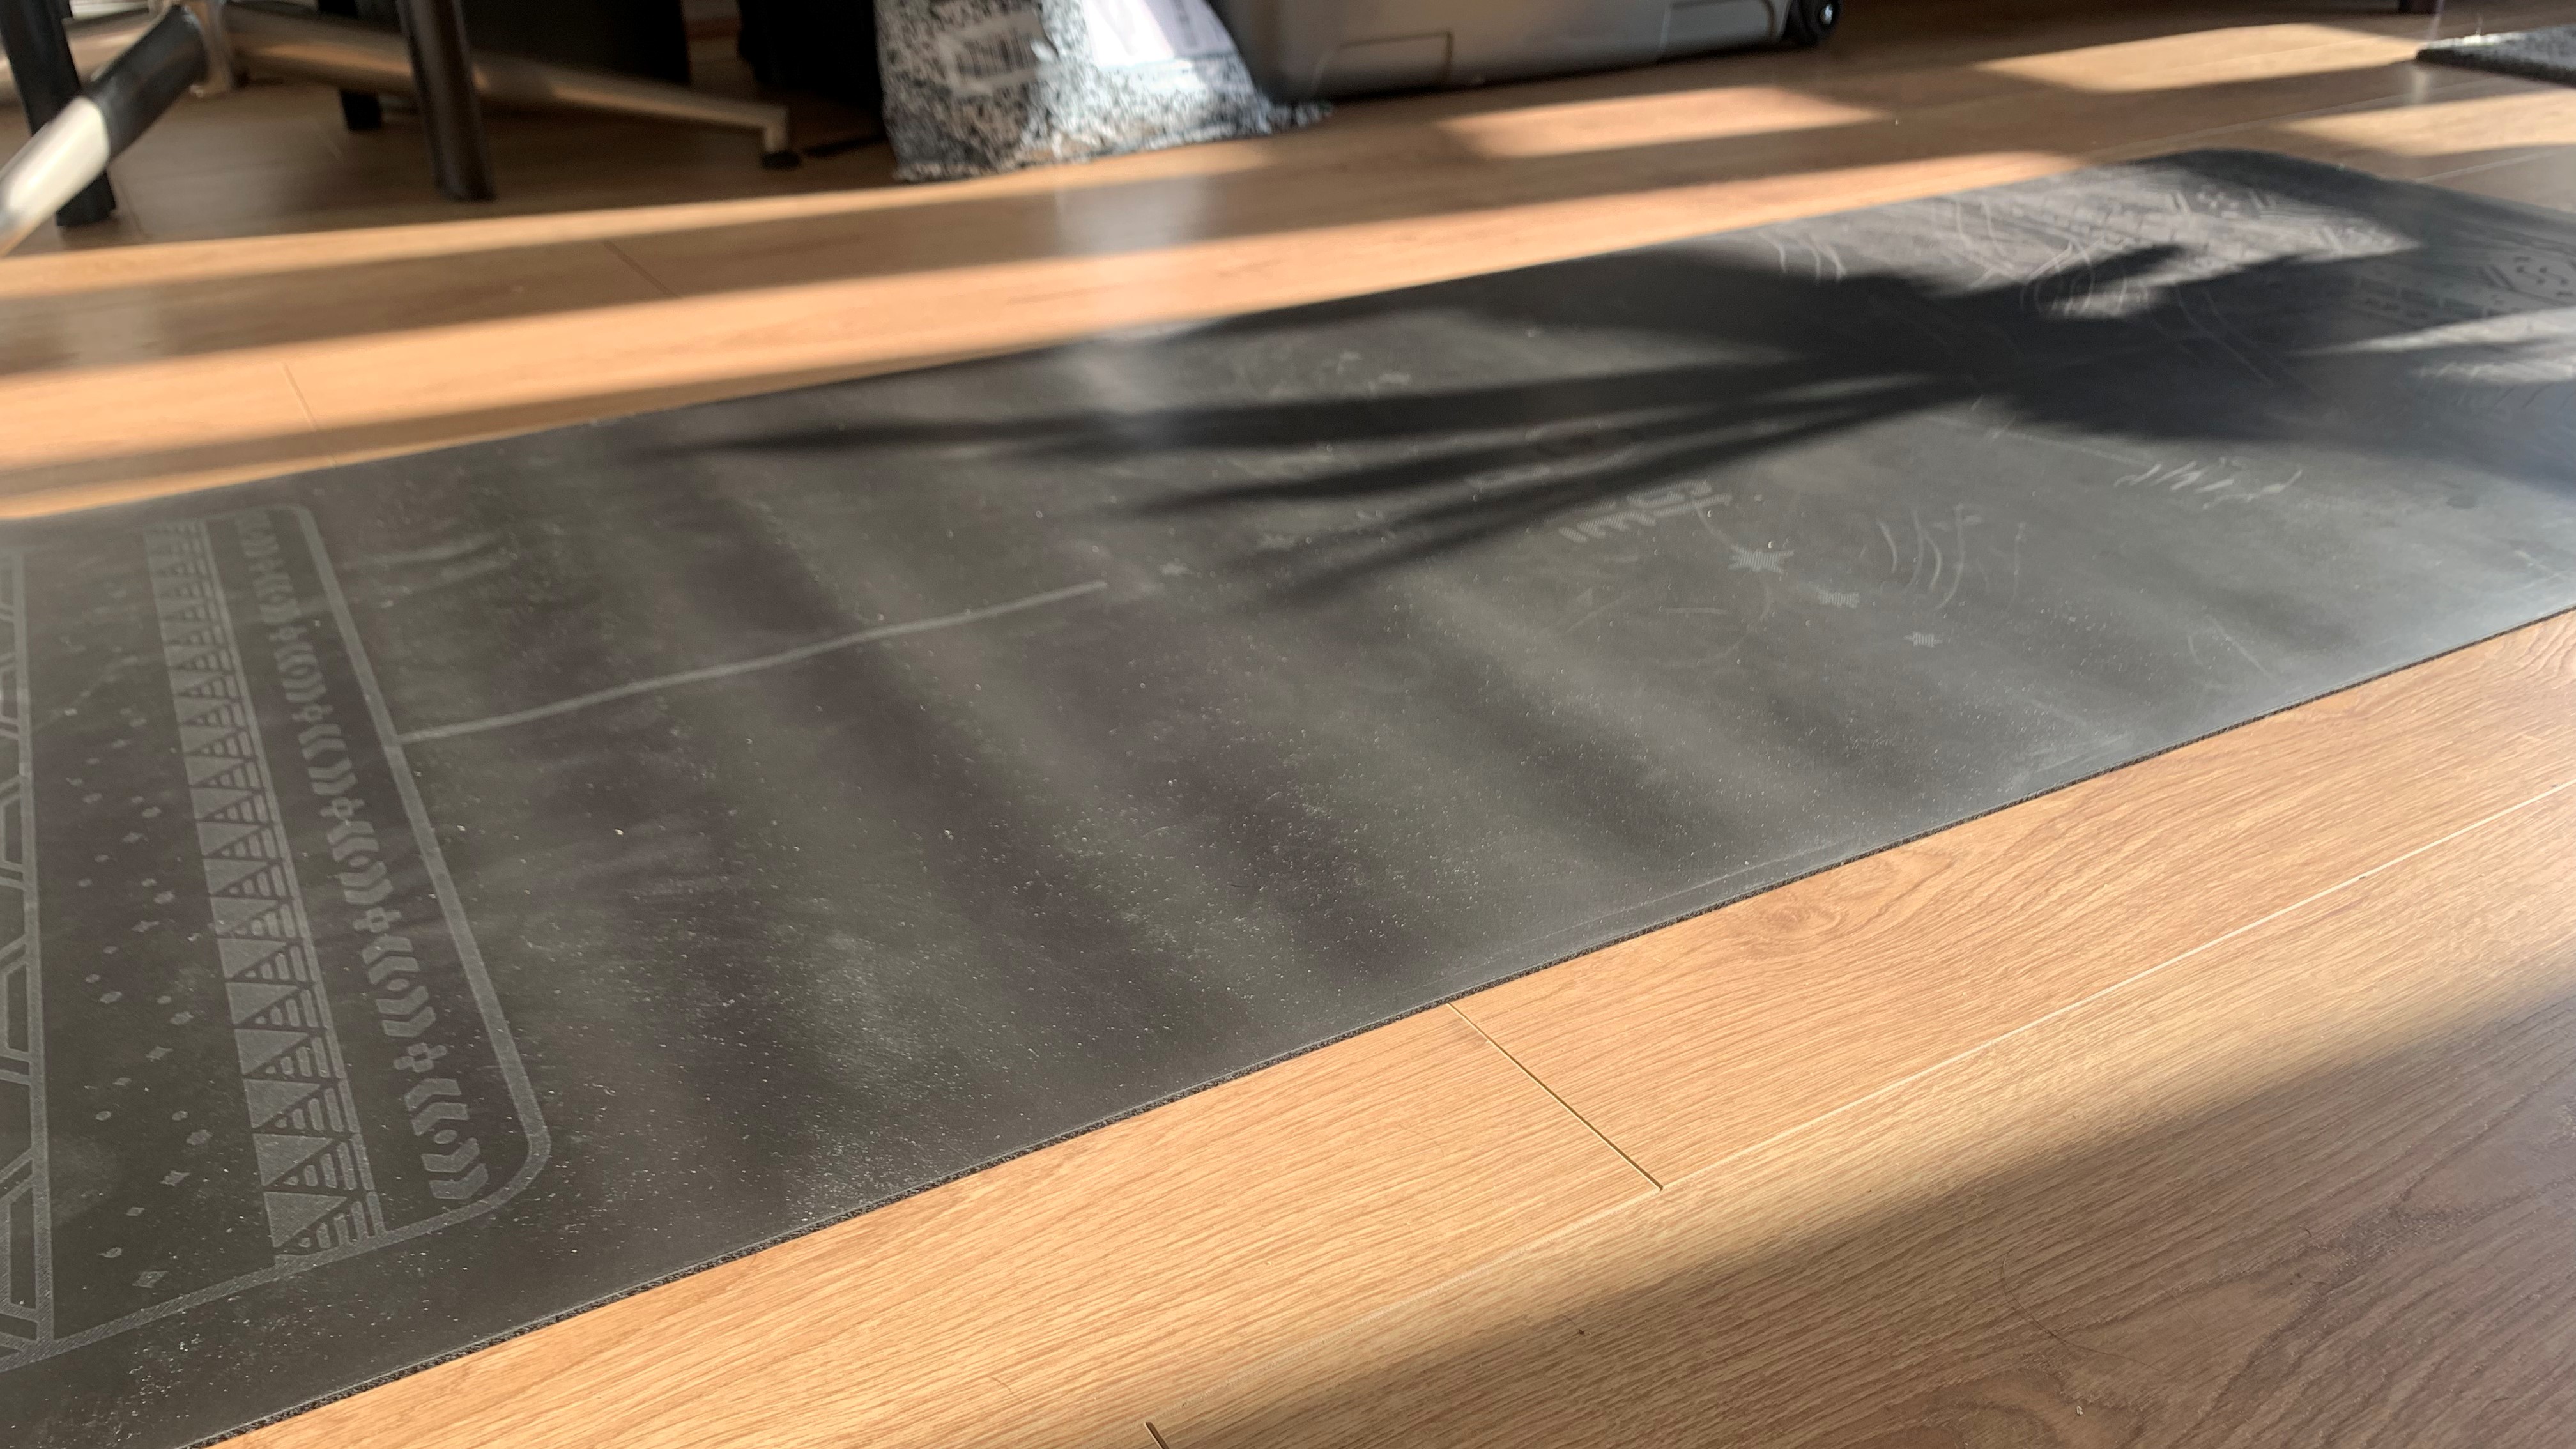 Yogi Bare Paws Natural Rubber Extreme Grip Yogamatte ausgerollt bereit zum Testen